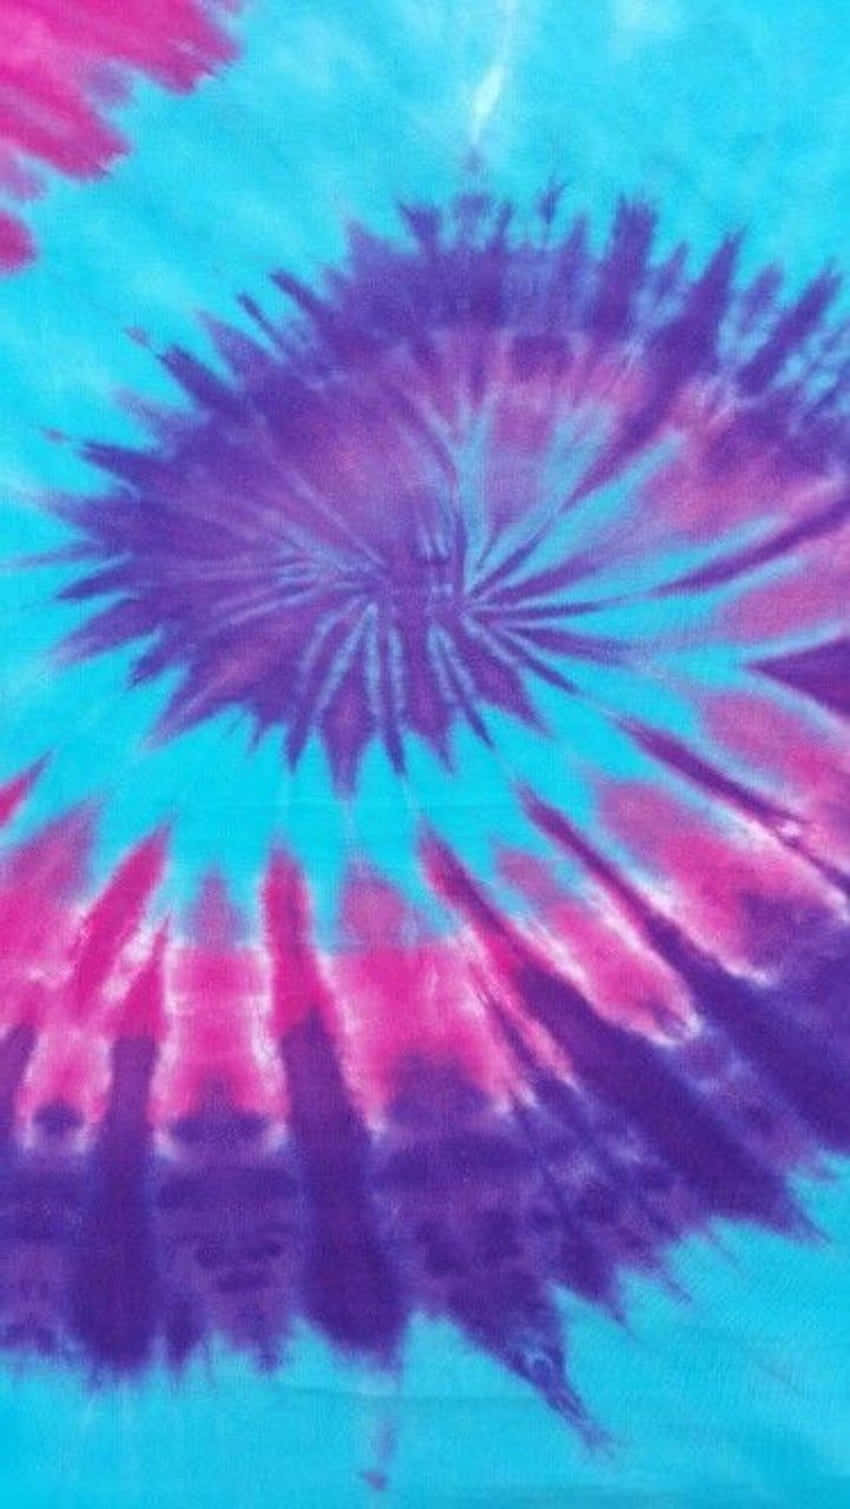 Patrónde Círculos De Tie Dye En Tonos Morados Y Azules Para Fondo De Pantalla De Computadora O Móvil. Fondo de pantalla